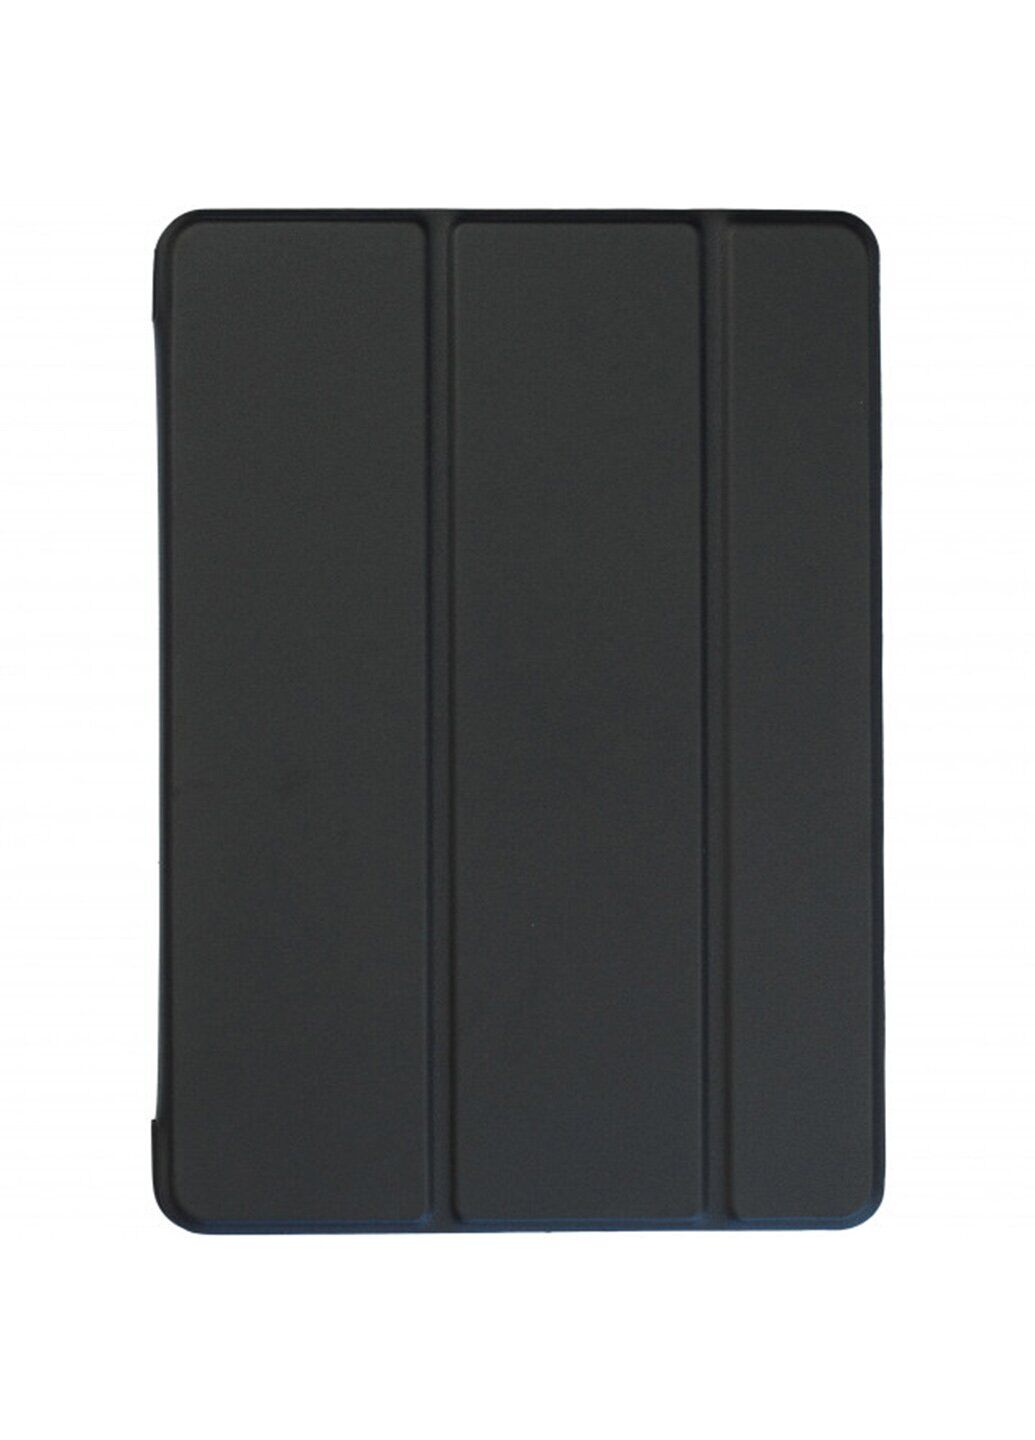 Чохол-книга Smartcase для iPad Pro 11 (2018) чорний ARM захисний Black